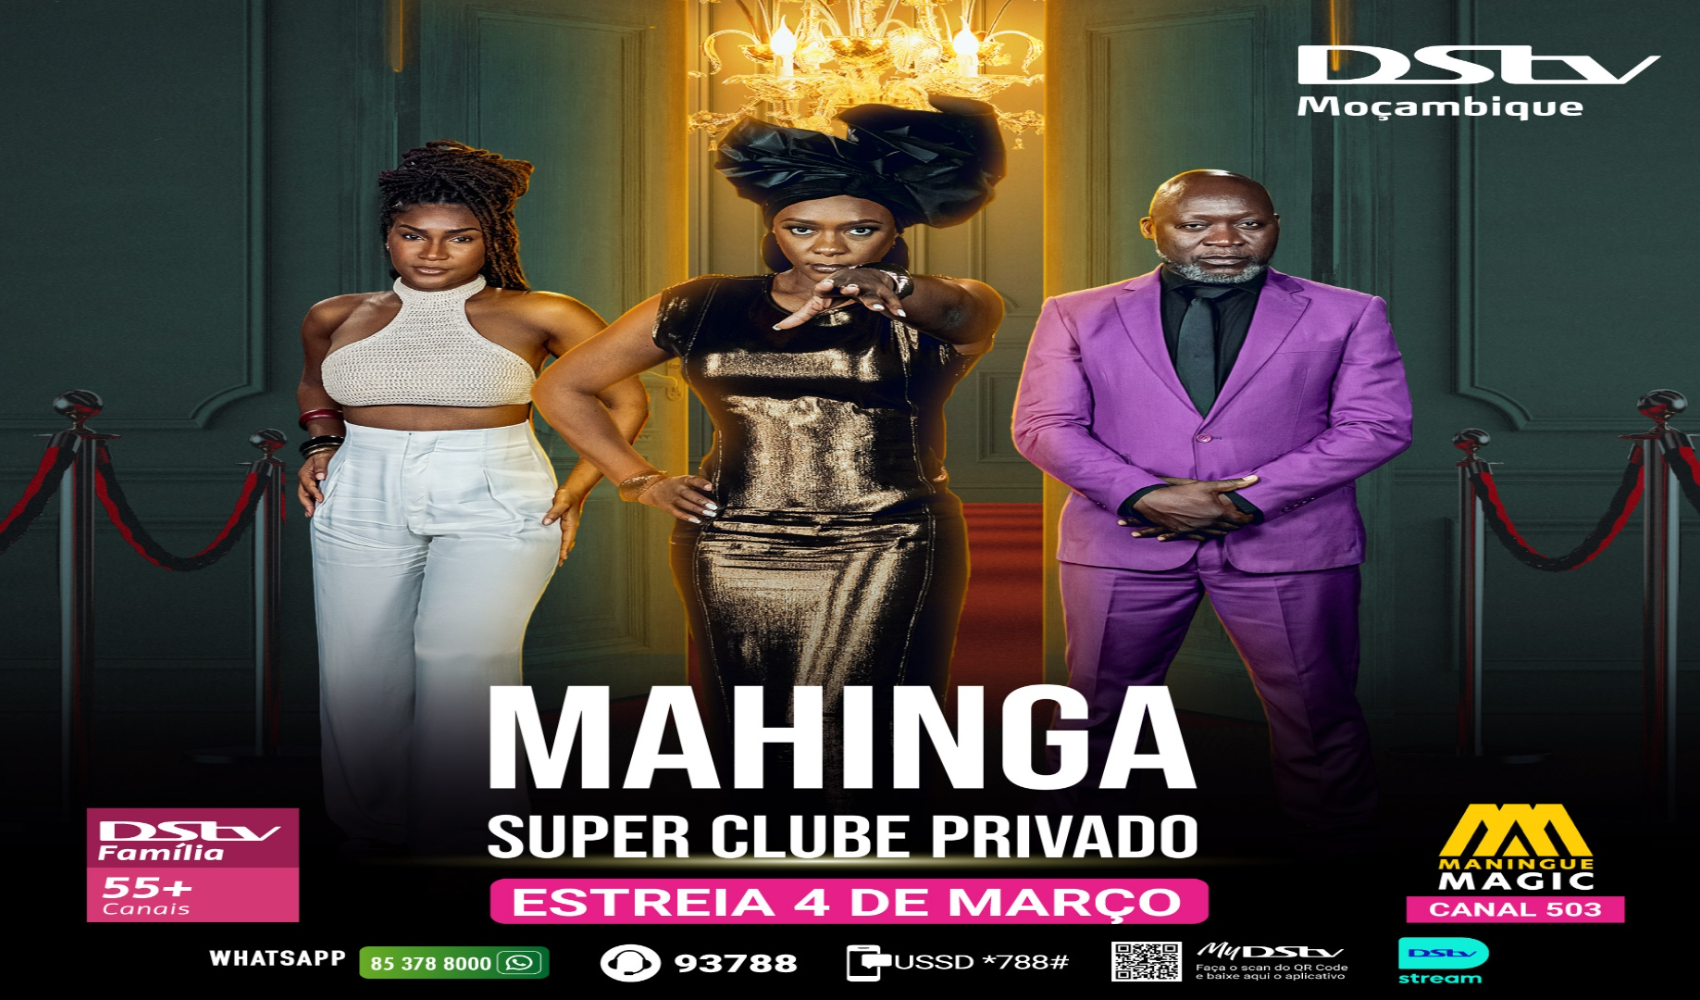 Maningue Magic estreia Mahinga: uma telenovela que retrata a batalha entre o ‘bem’ e o ‘mal’